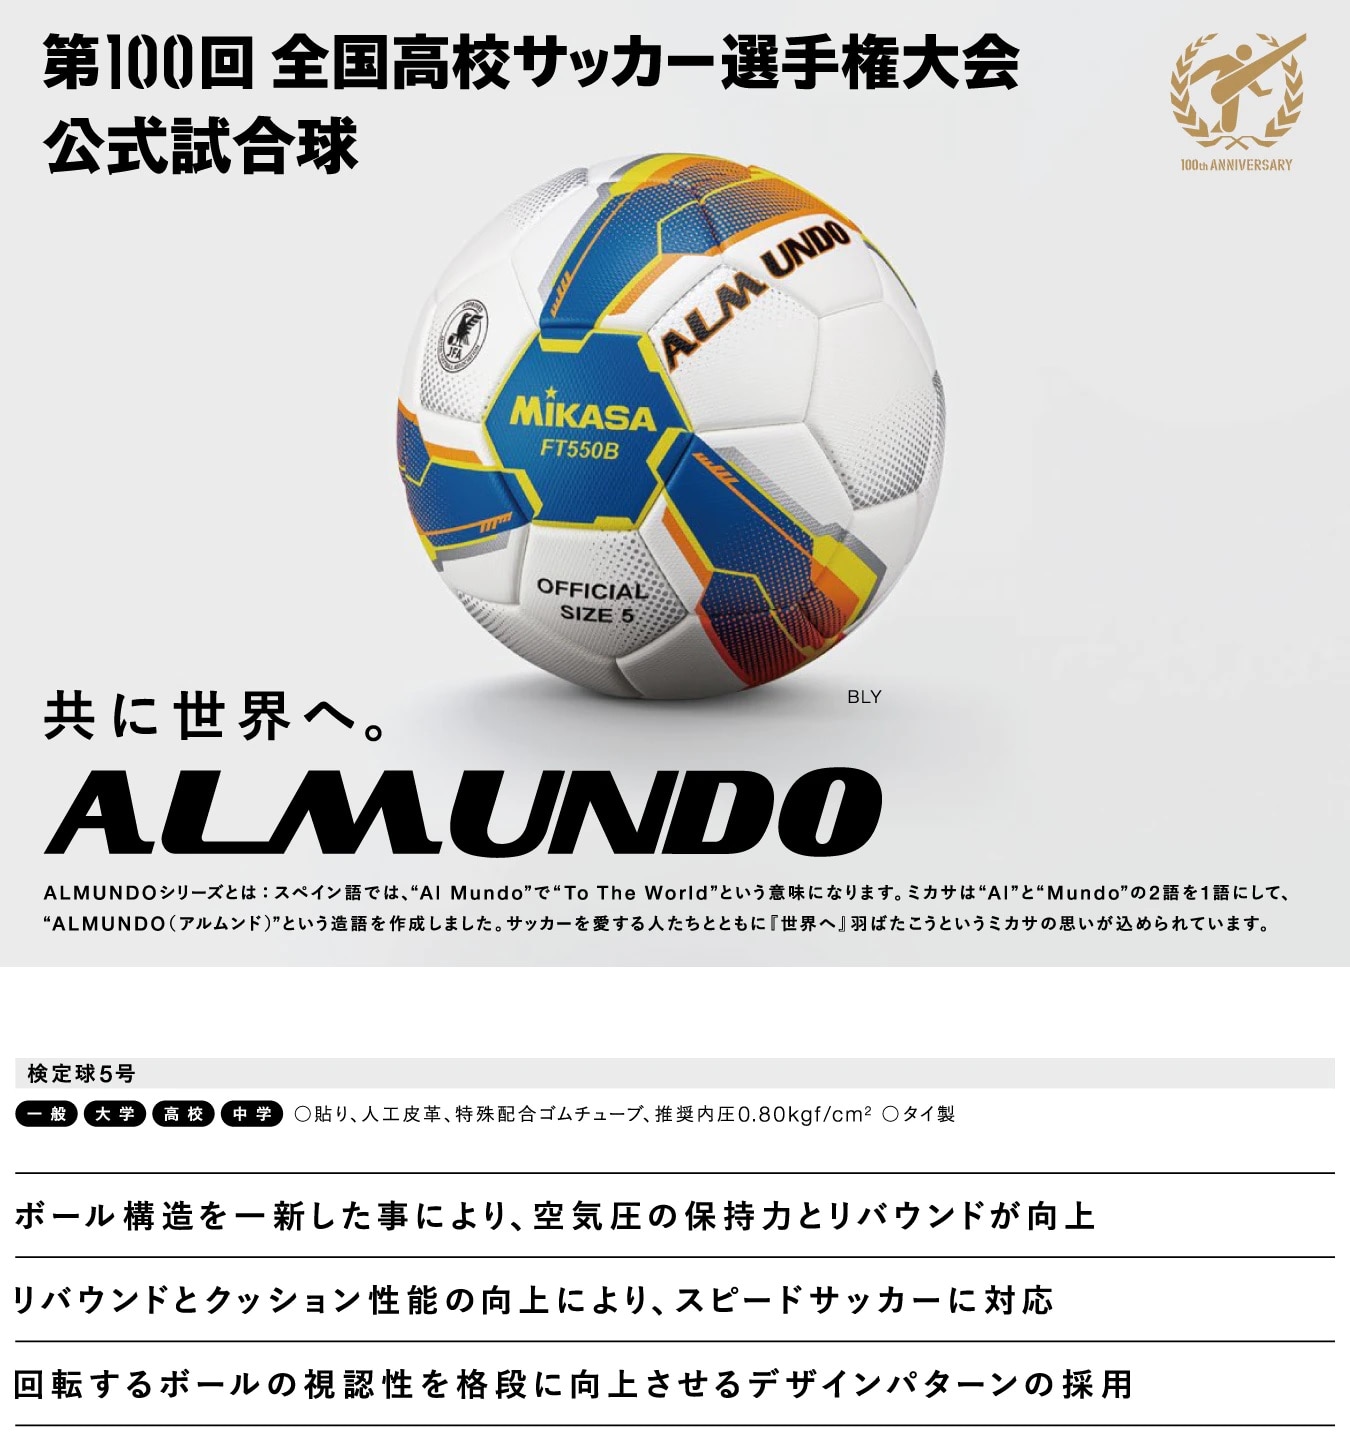 2021新商品 ミカサ MIKASA サッカーボール 5号球 検定球 メンズ ALMUNDO 検定球芝用 貼り BLY FT551B-BLY 